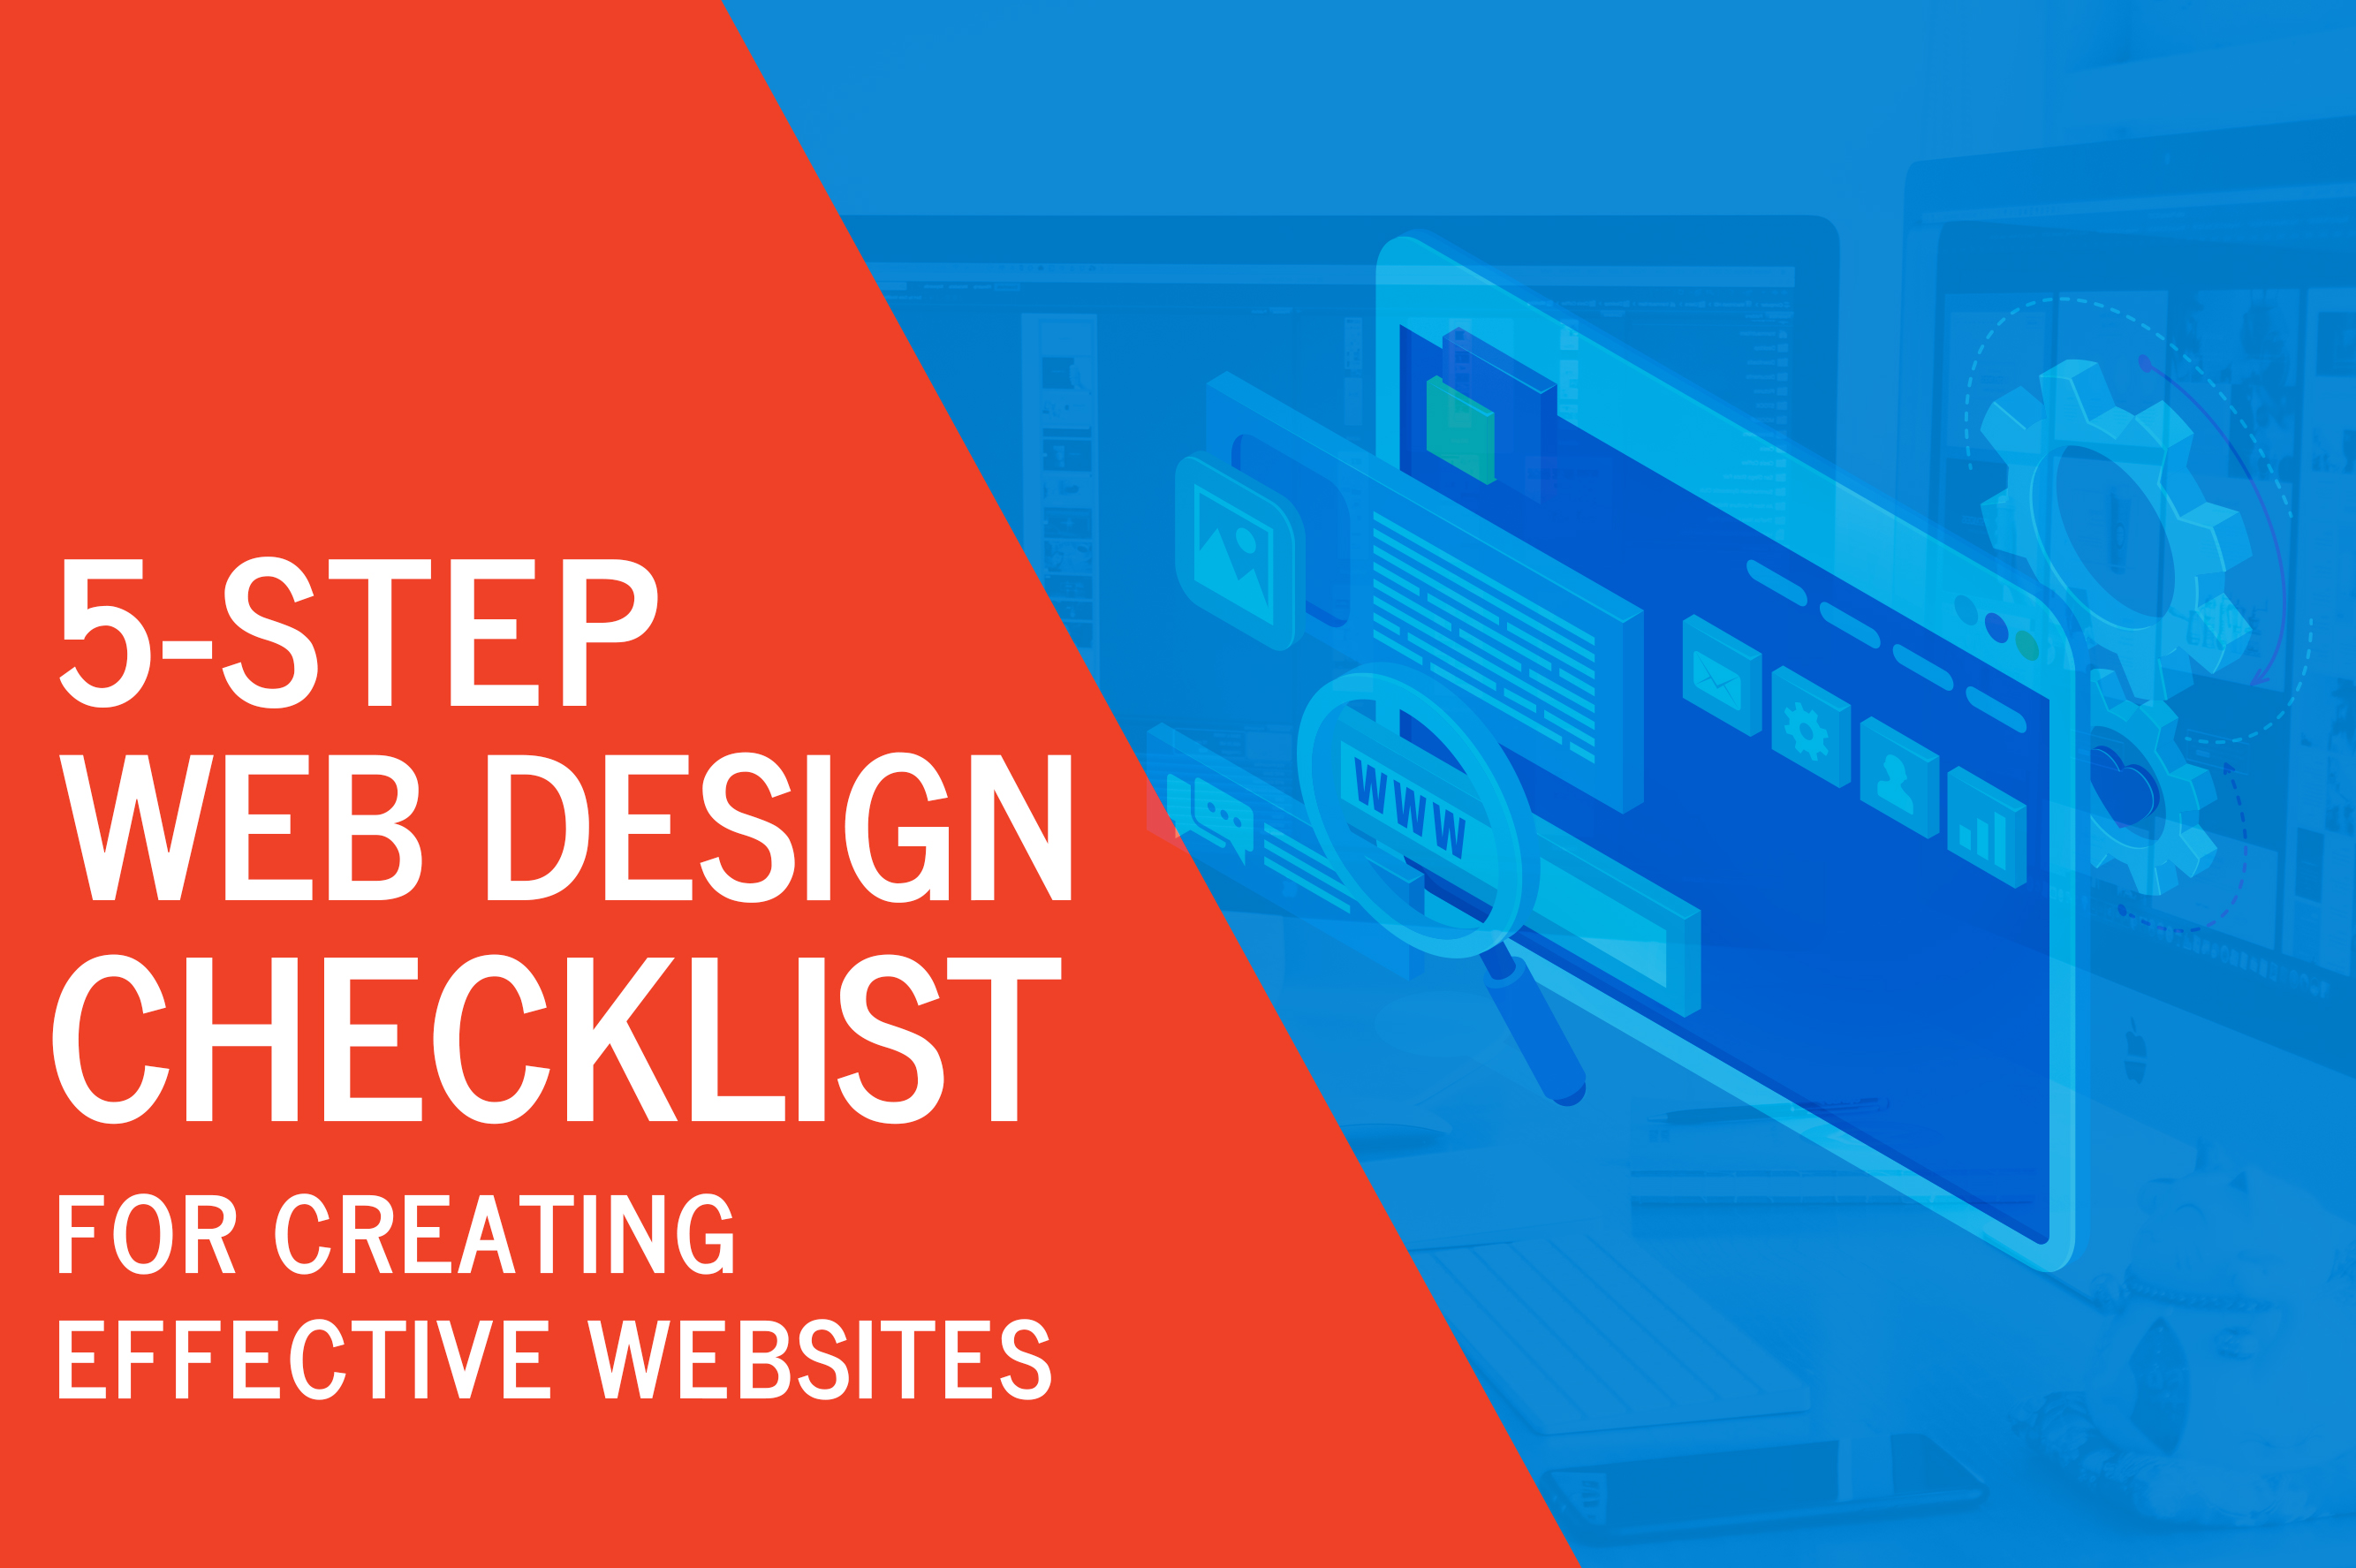 5 Step Web Design Checklist for Creating Effective Websites